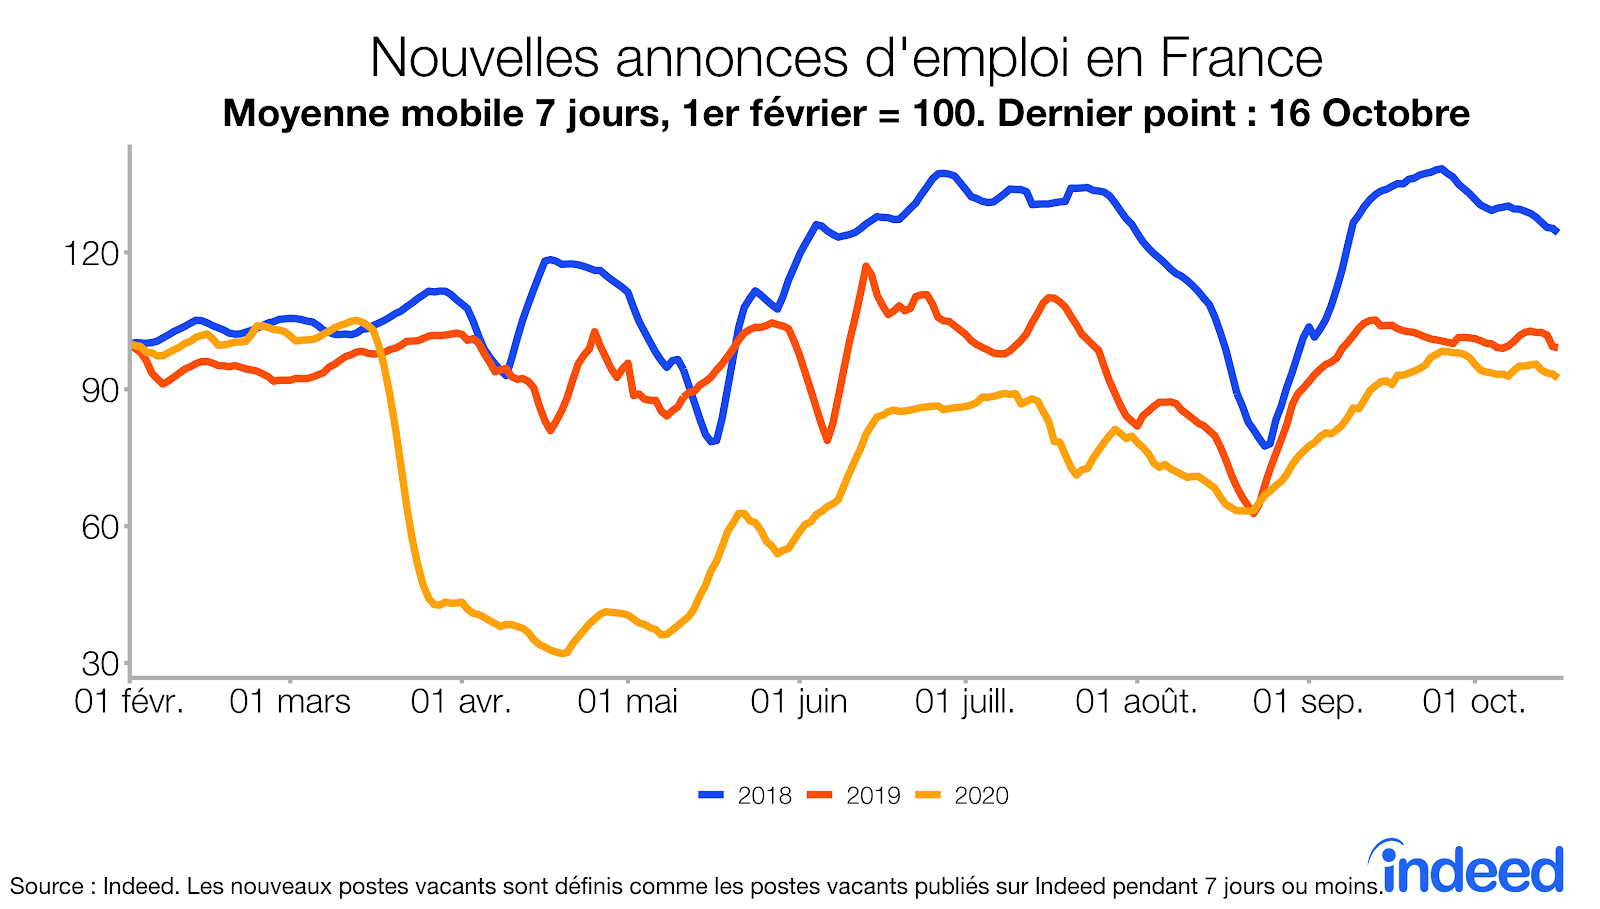 Nouvelles annonces d'emploi en France